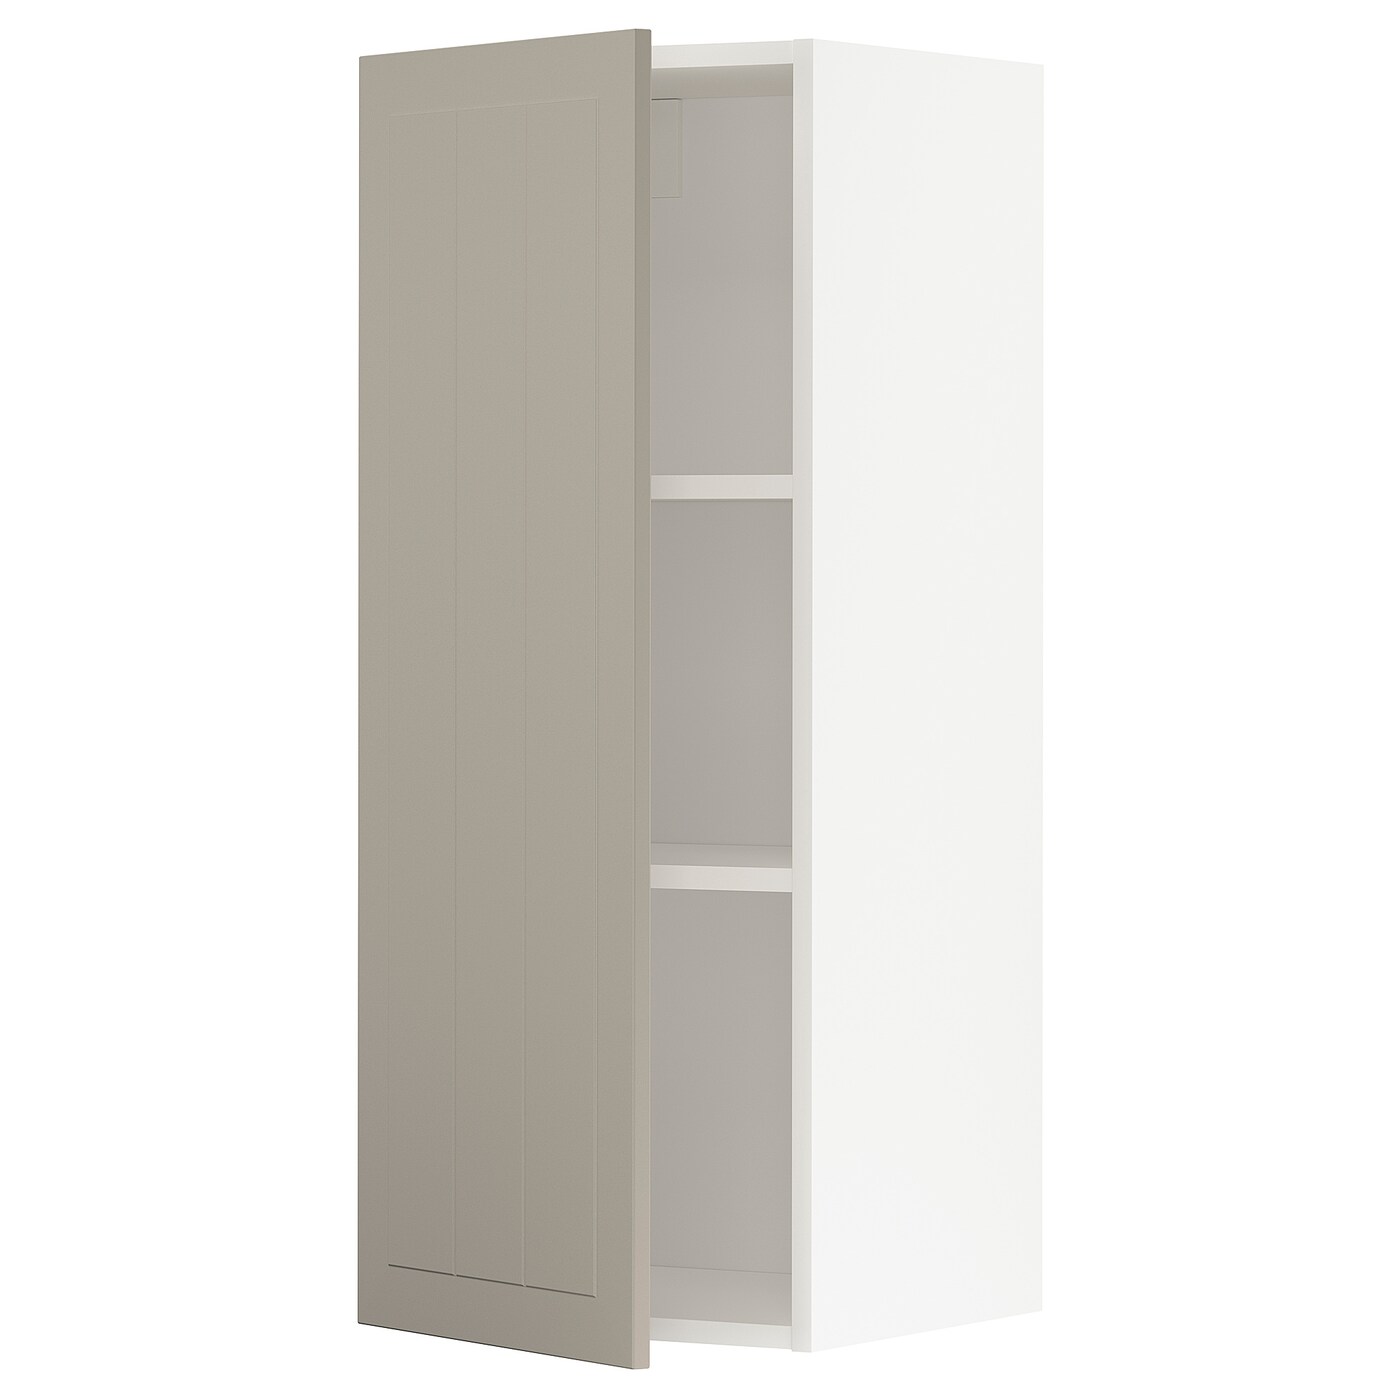 Навесной шкаф с полкой - METOD IKEA/ МЕТОД ИКЕА, 100х40 см, белый/светло-коричневый